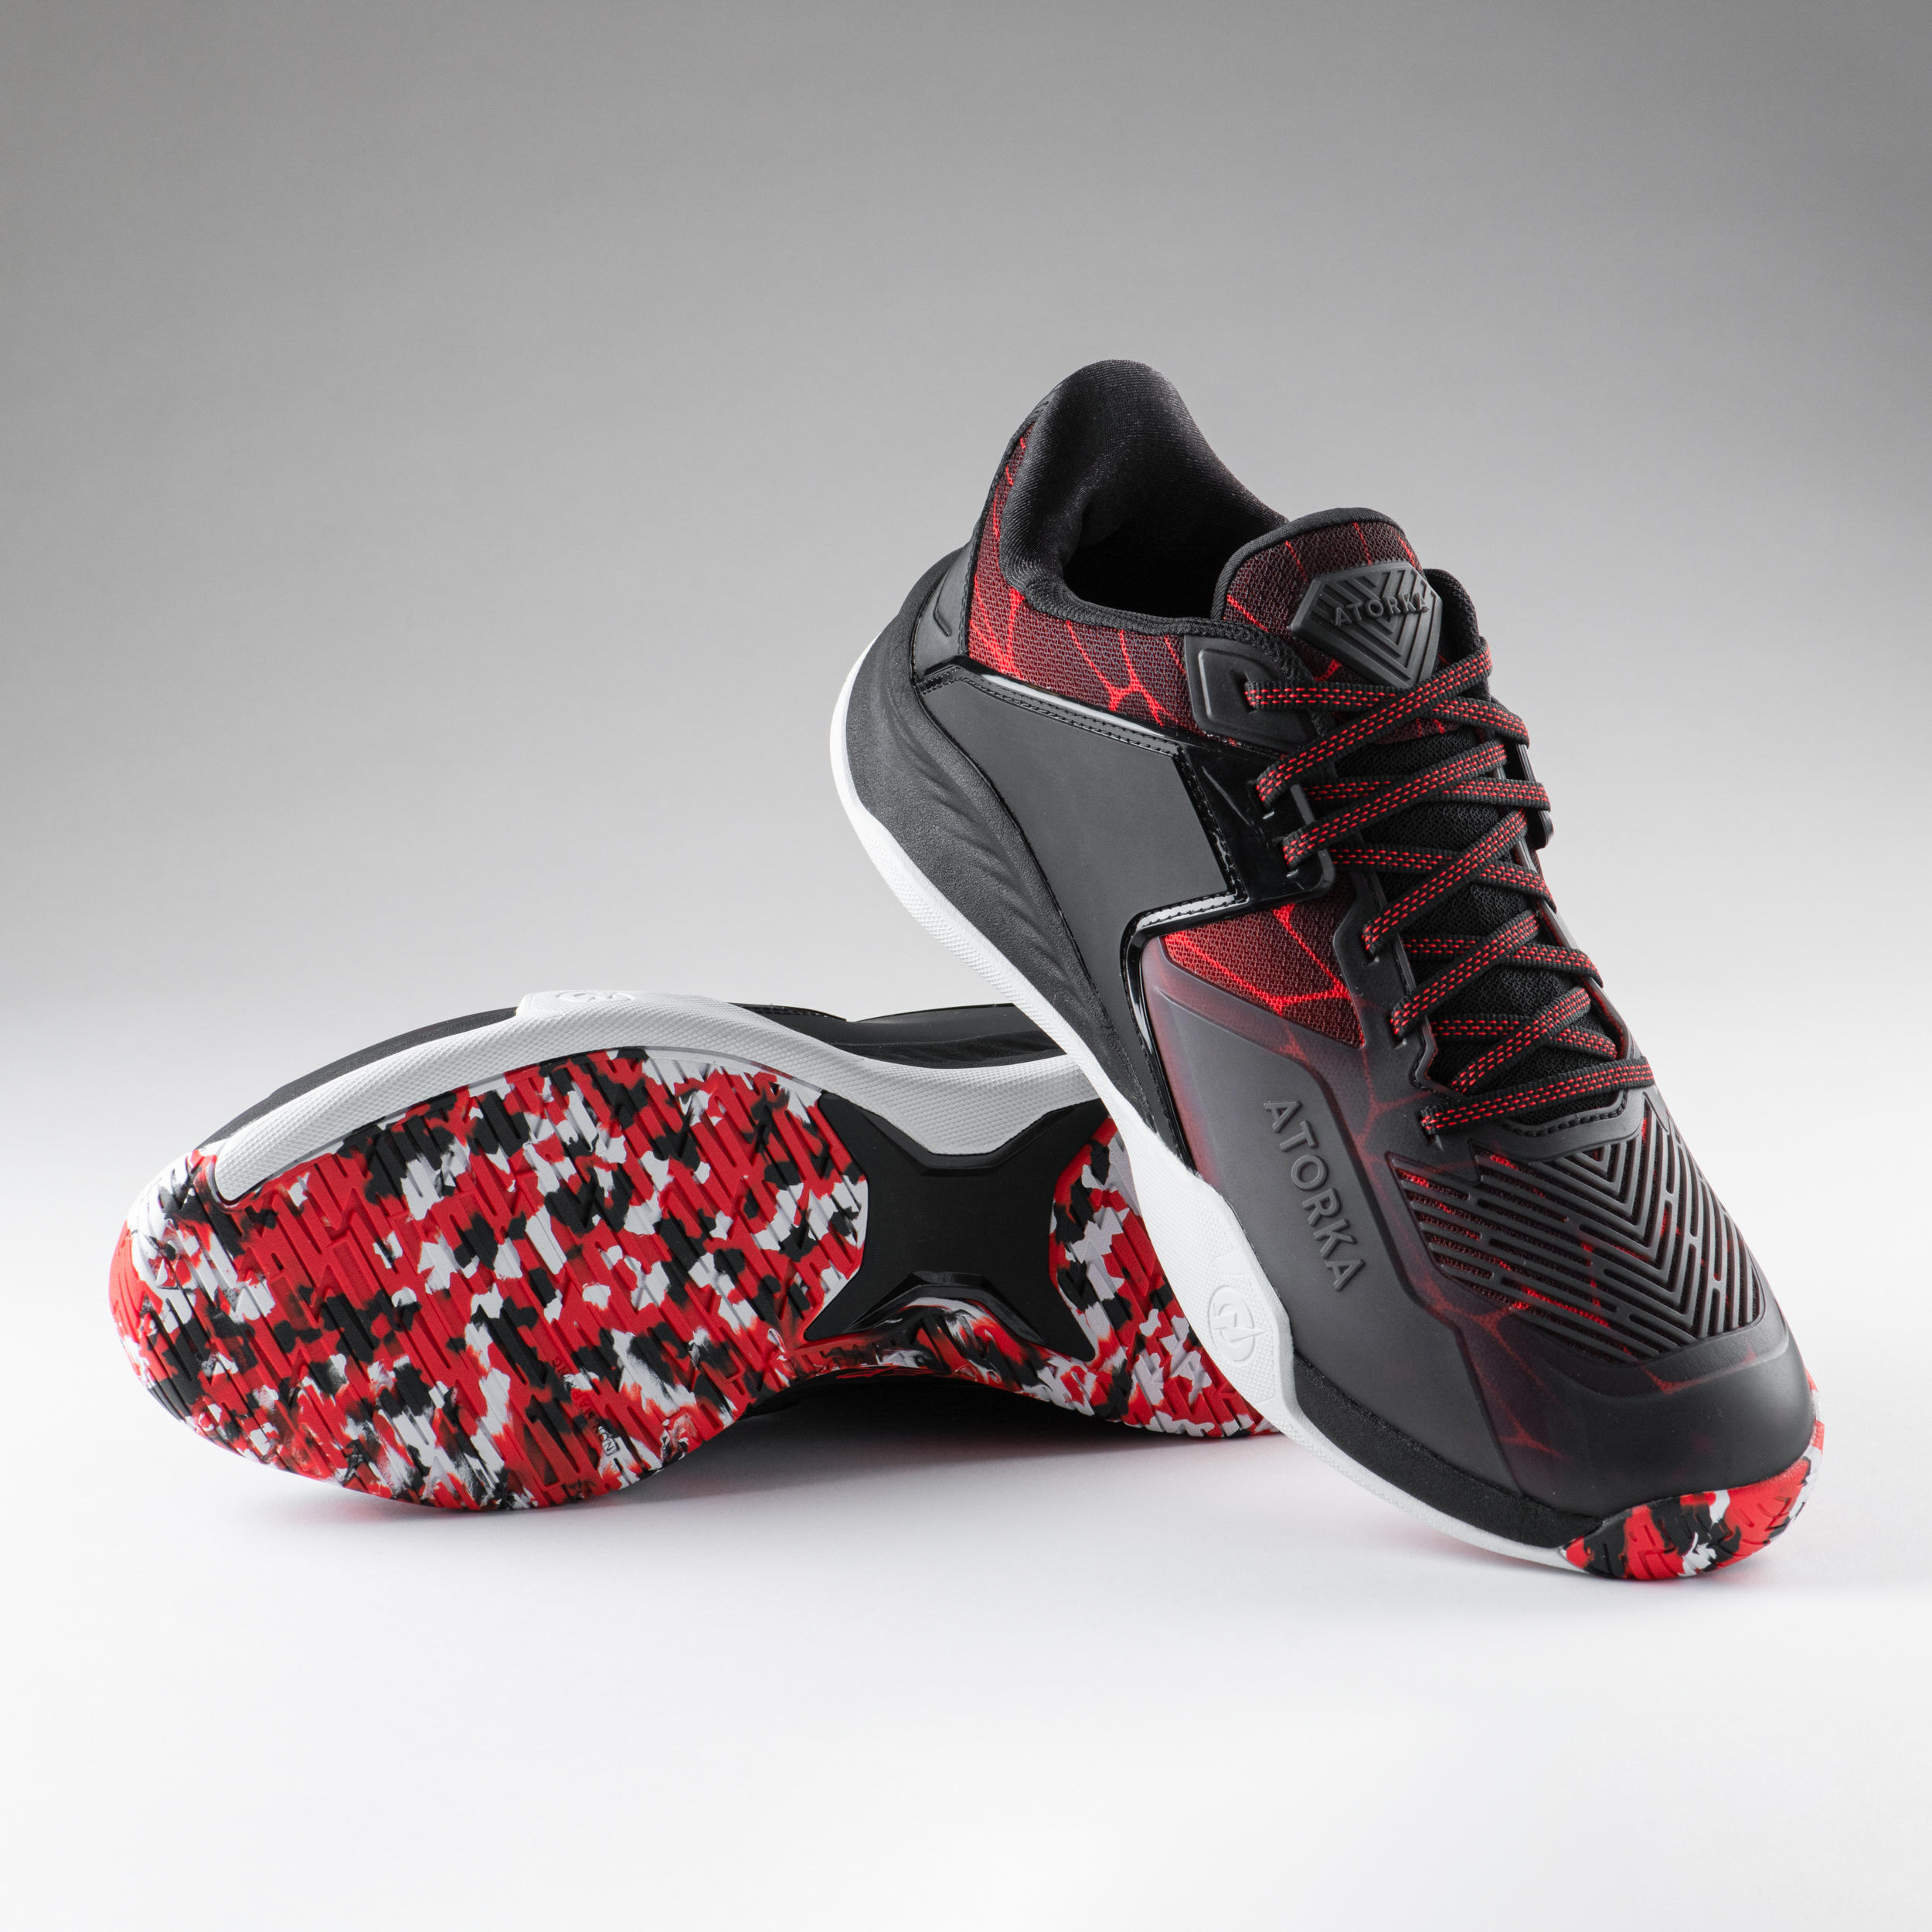 Men's Handball Shoes H900 Stronger - Black/Red 5/7